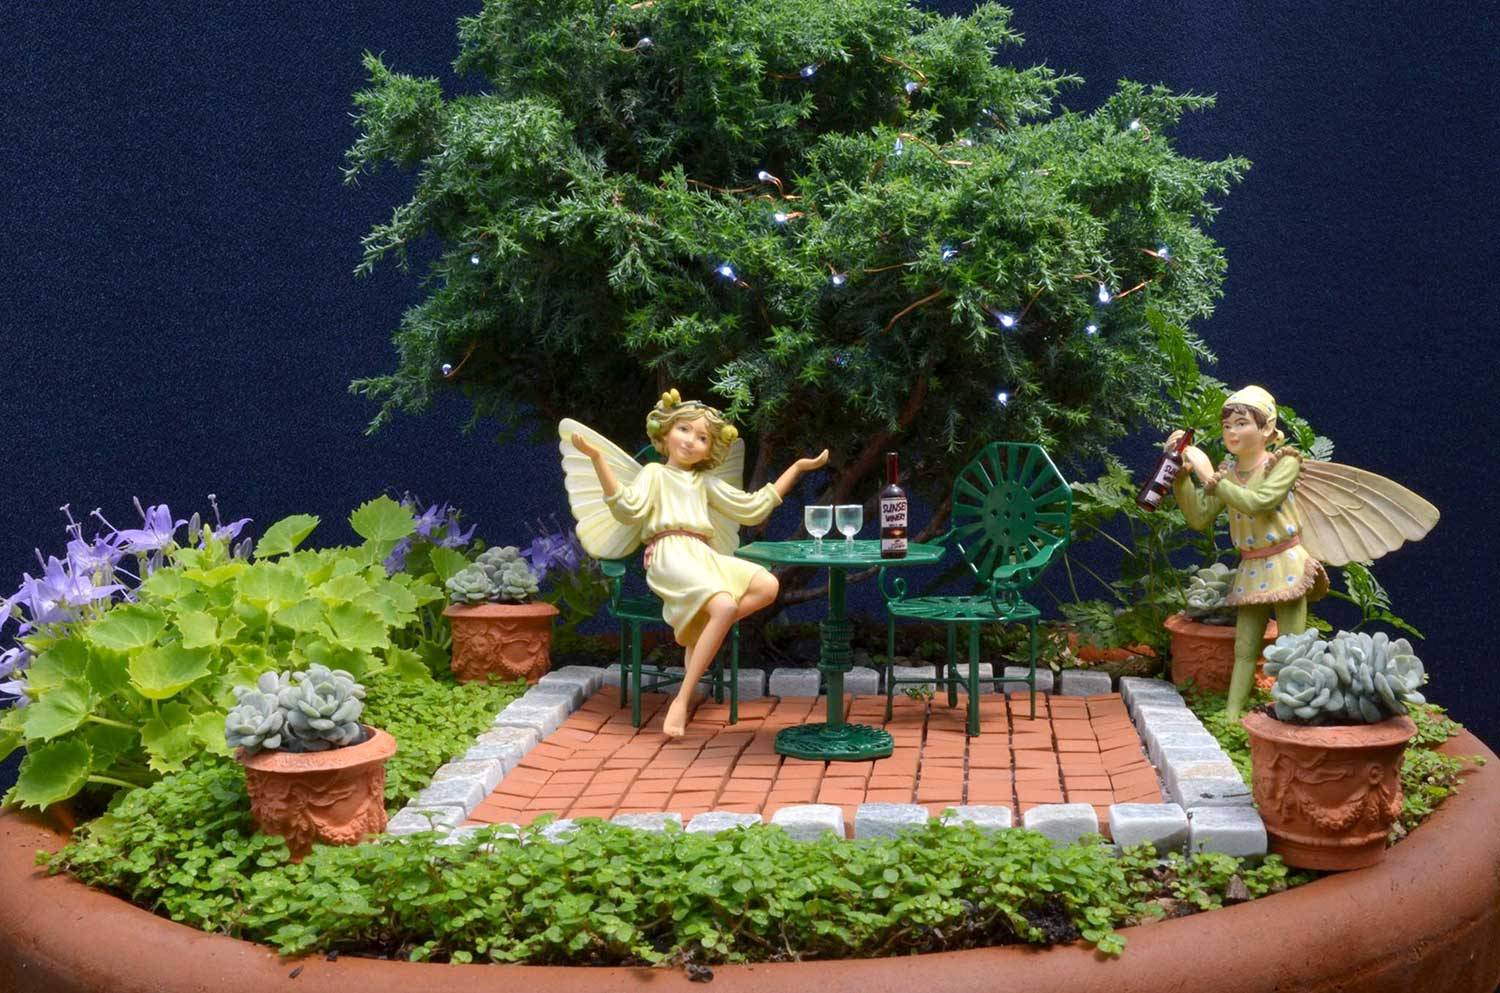 Enchanted Garden Ideas